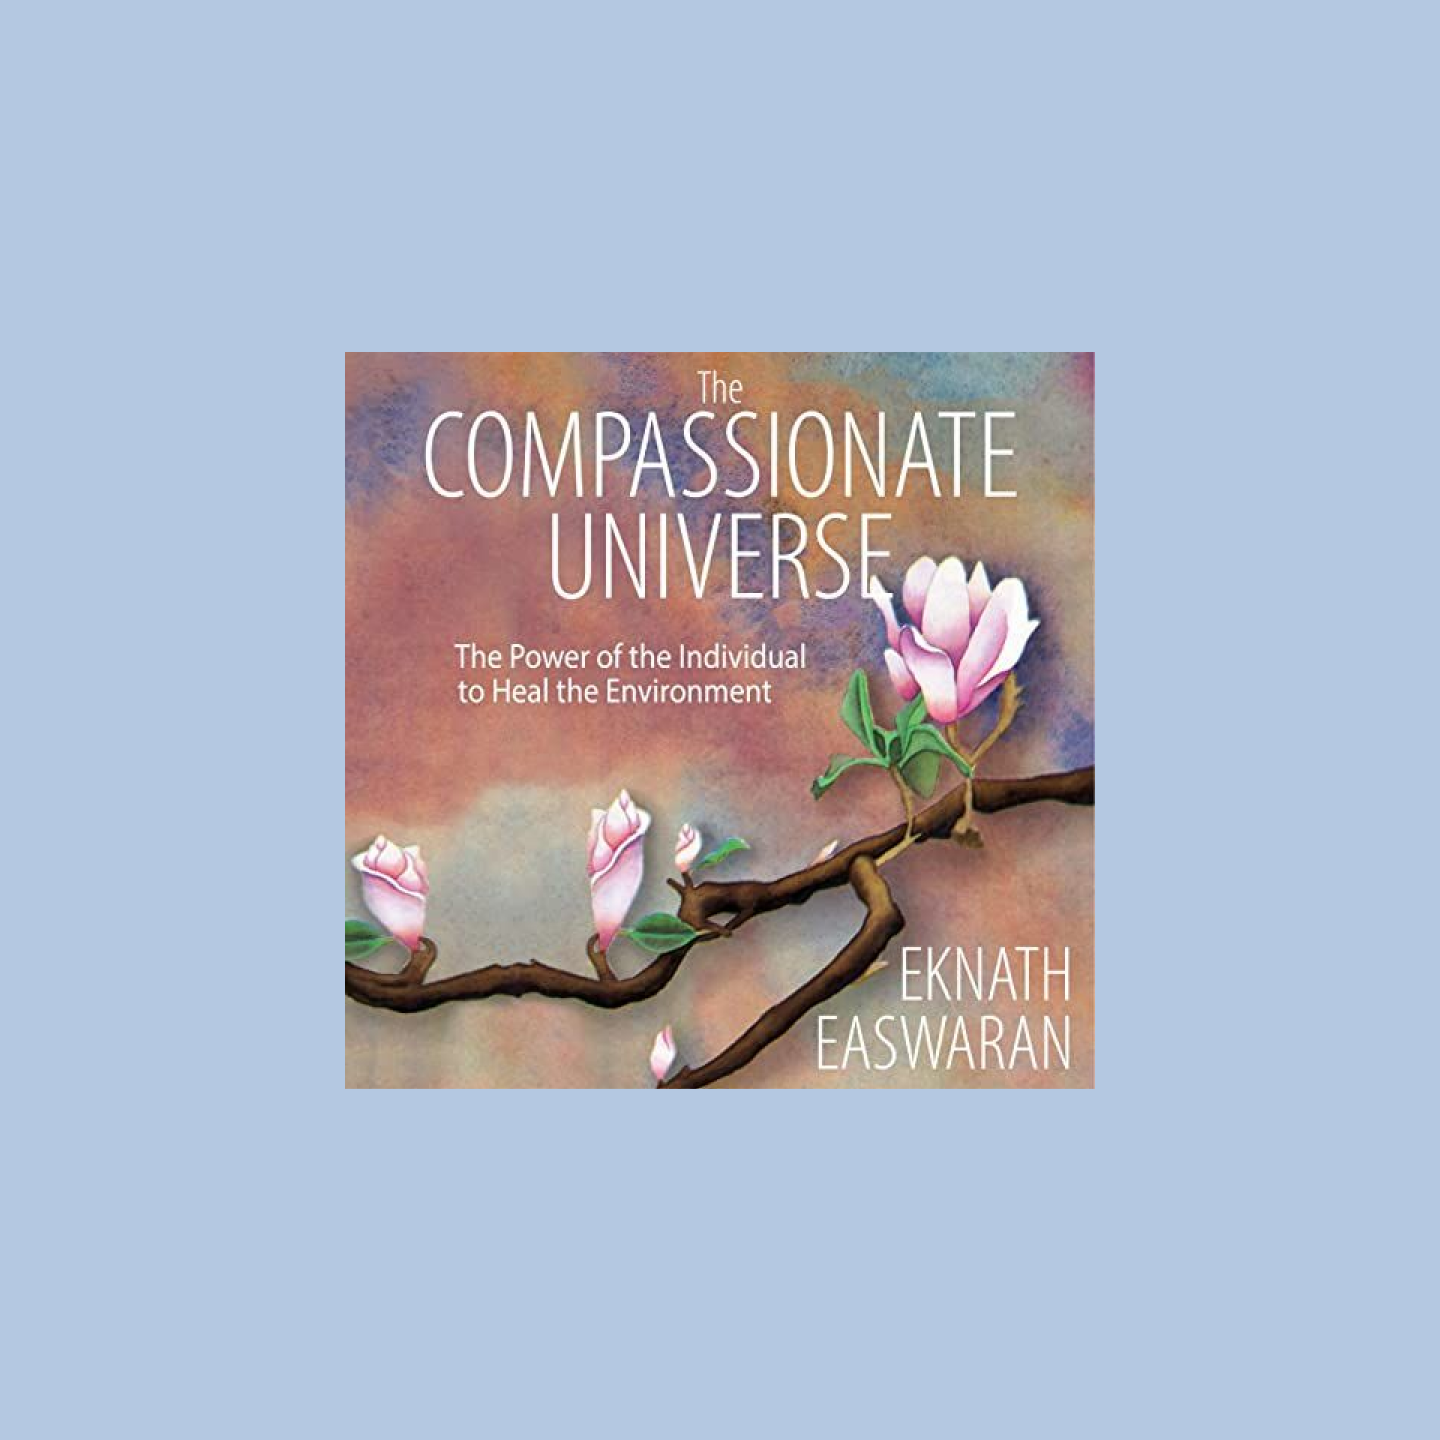 Titelbild des Hörbuchs „The Compassionate Universe“, auf dem ein Kirschblütenzweig zu sehen ist